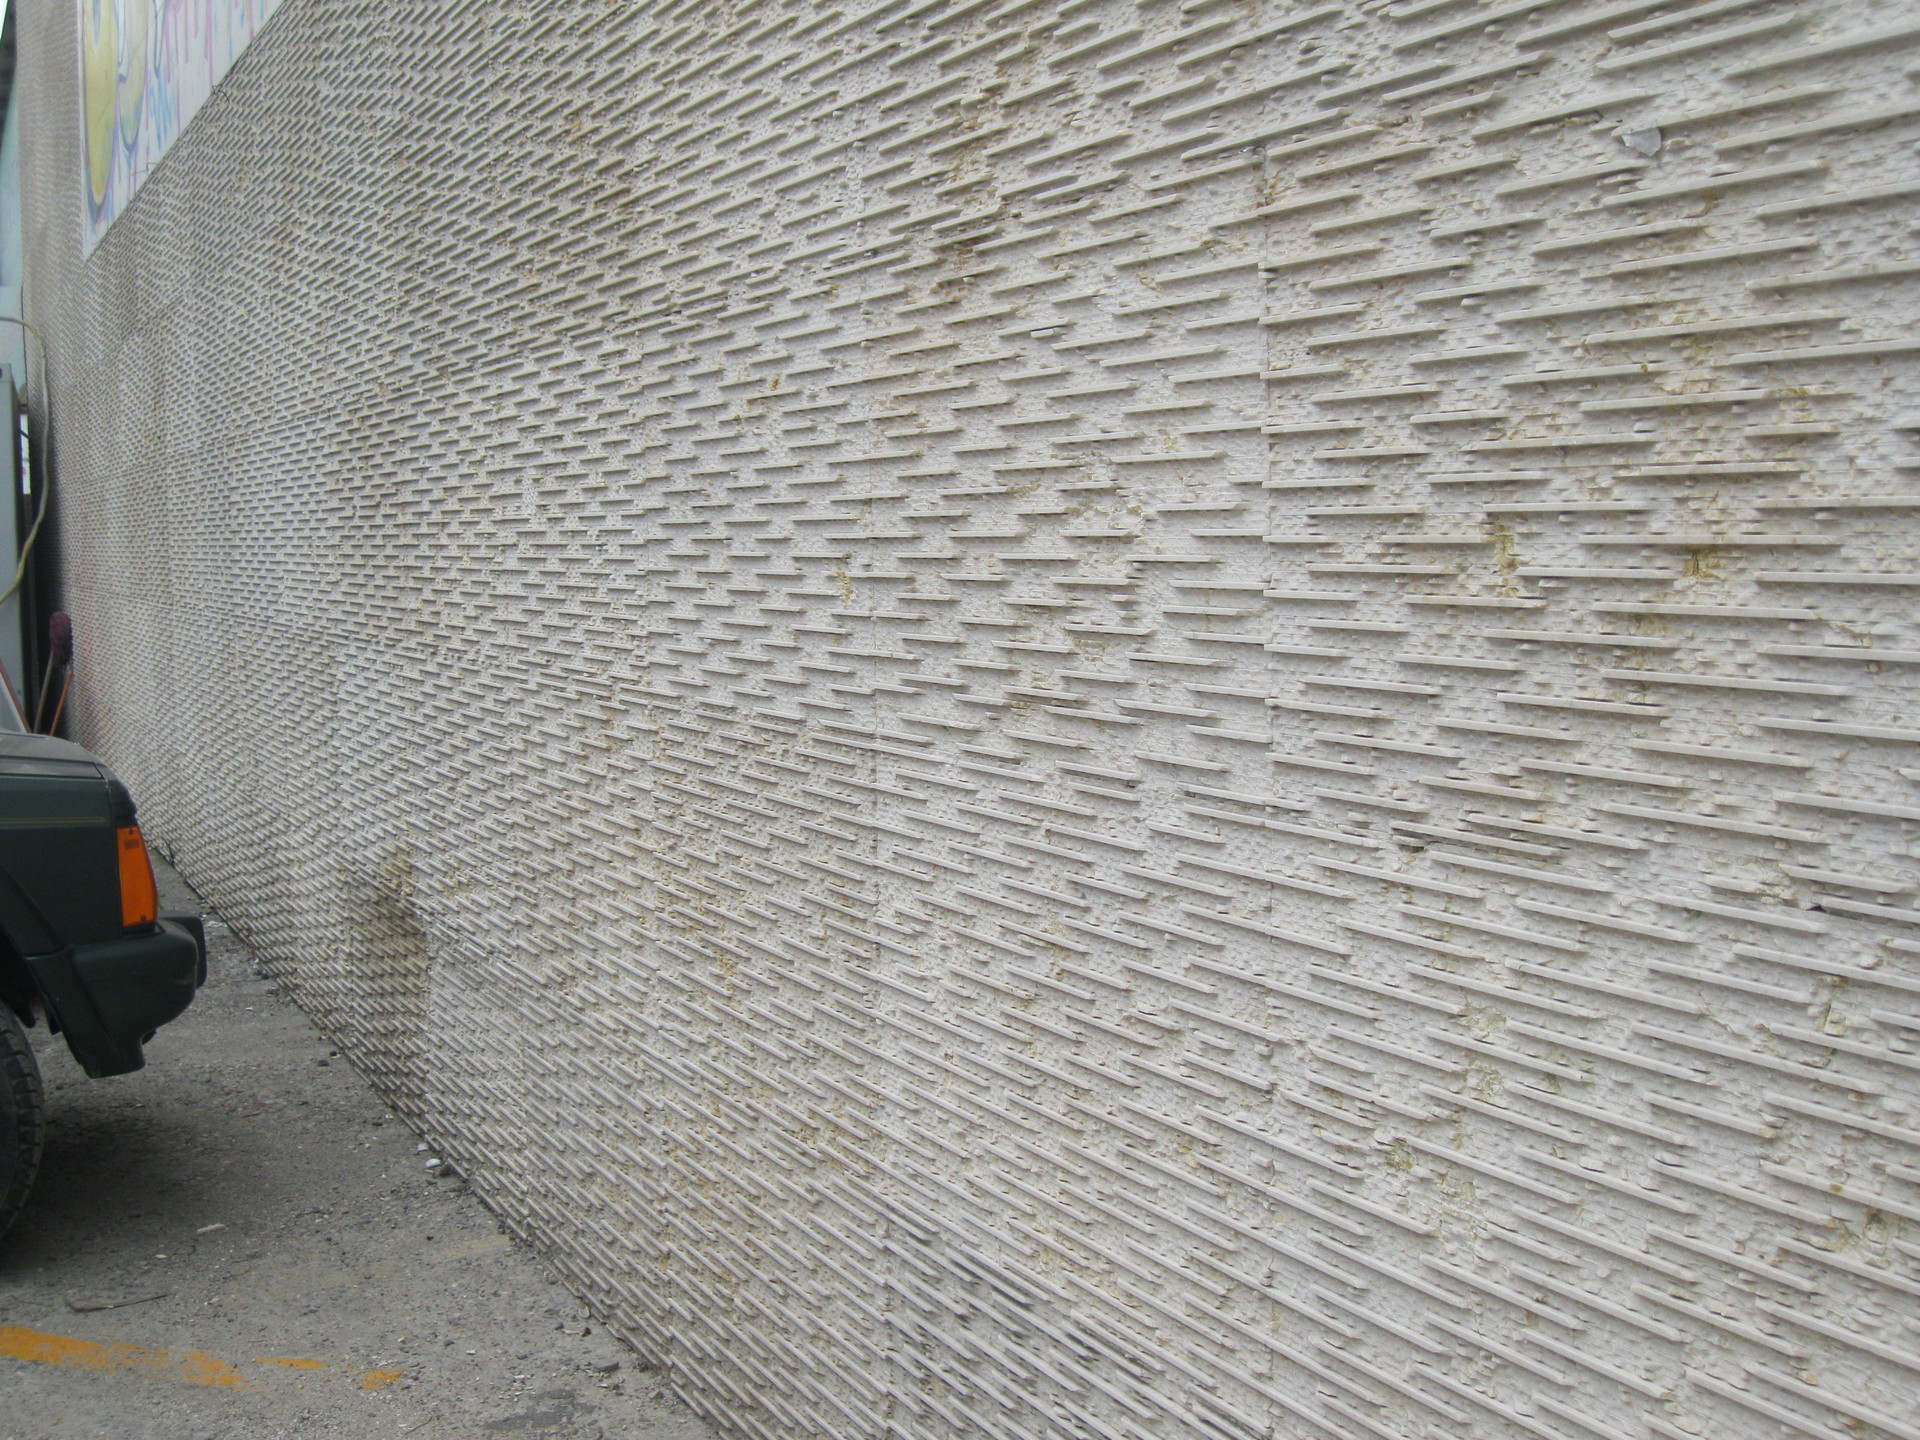 水幕墙 流水石 背景墙文化石 曲线 拉丝 镙纹